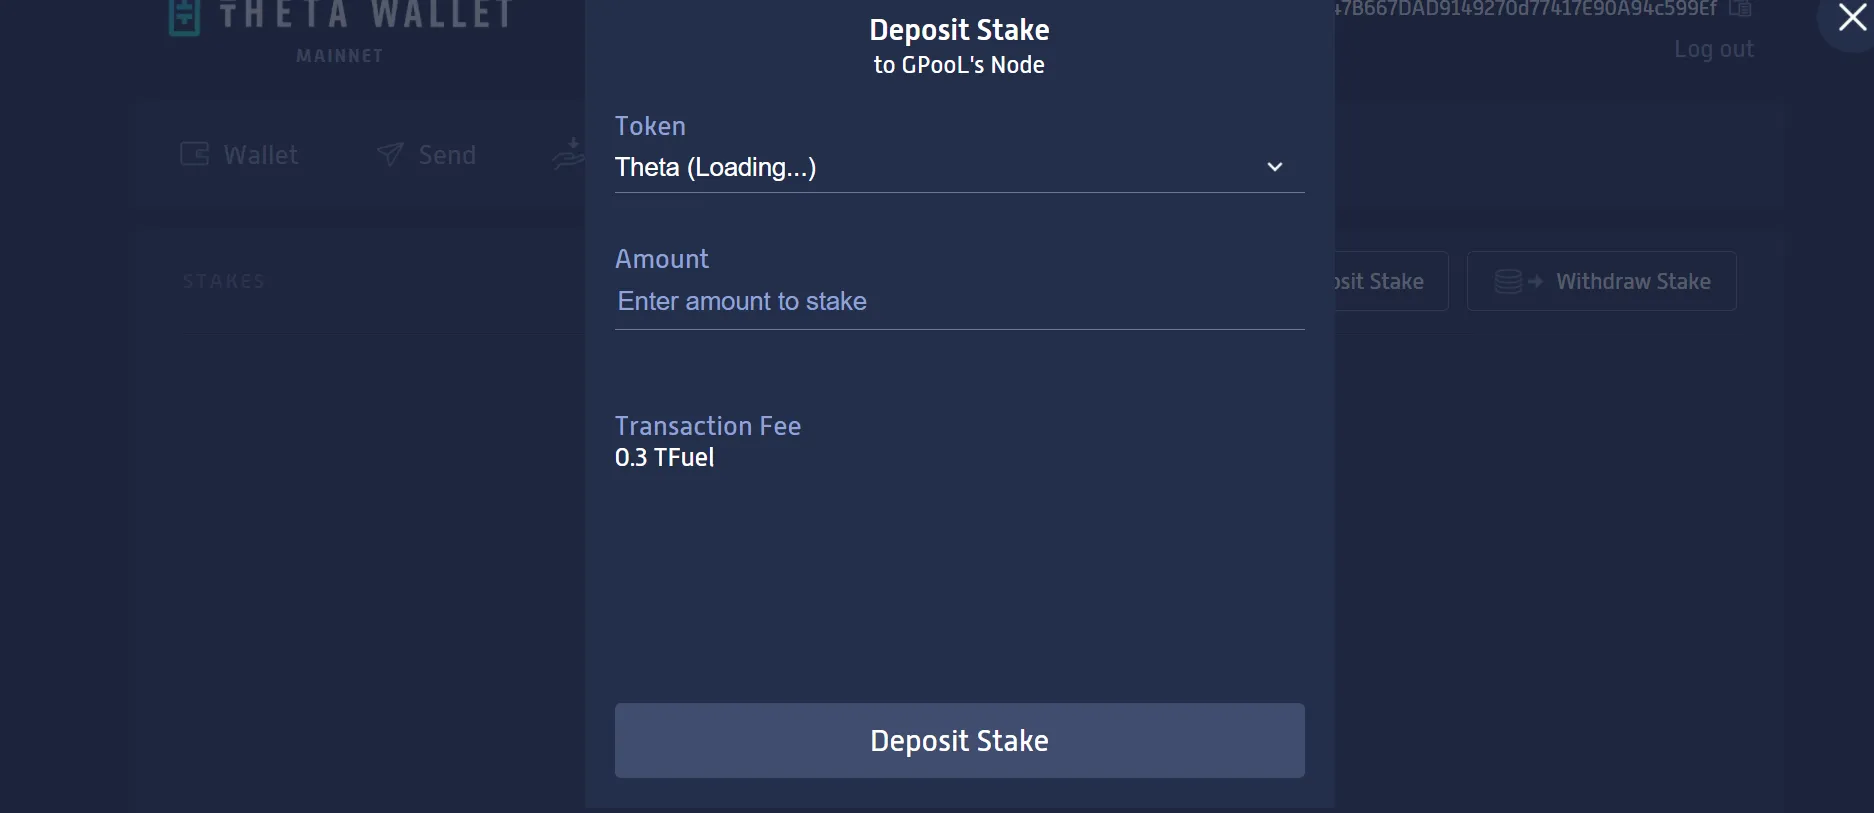 Deposit stake